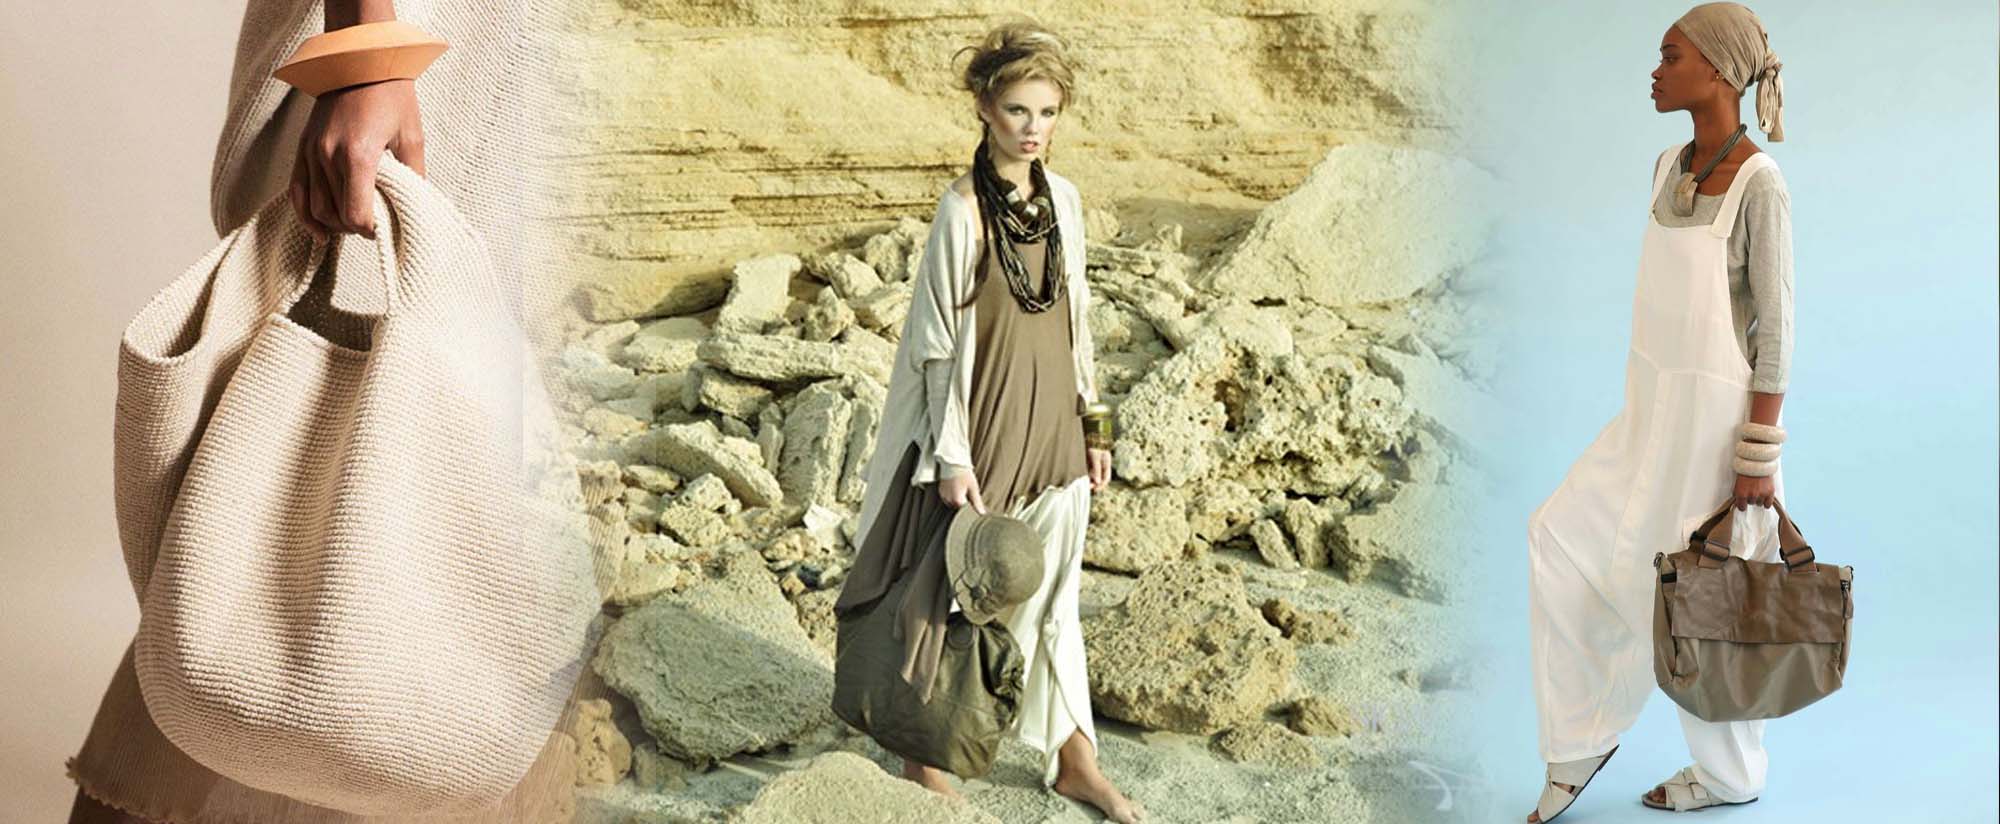 אופנה ופרשת השבוע- סגנון הלבוש הטבעי, Fashion Israel - מגזין אופנה ישראלי